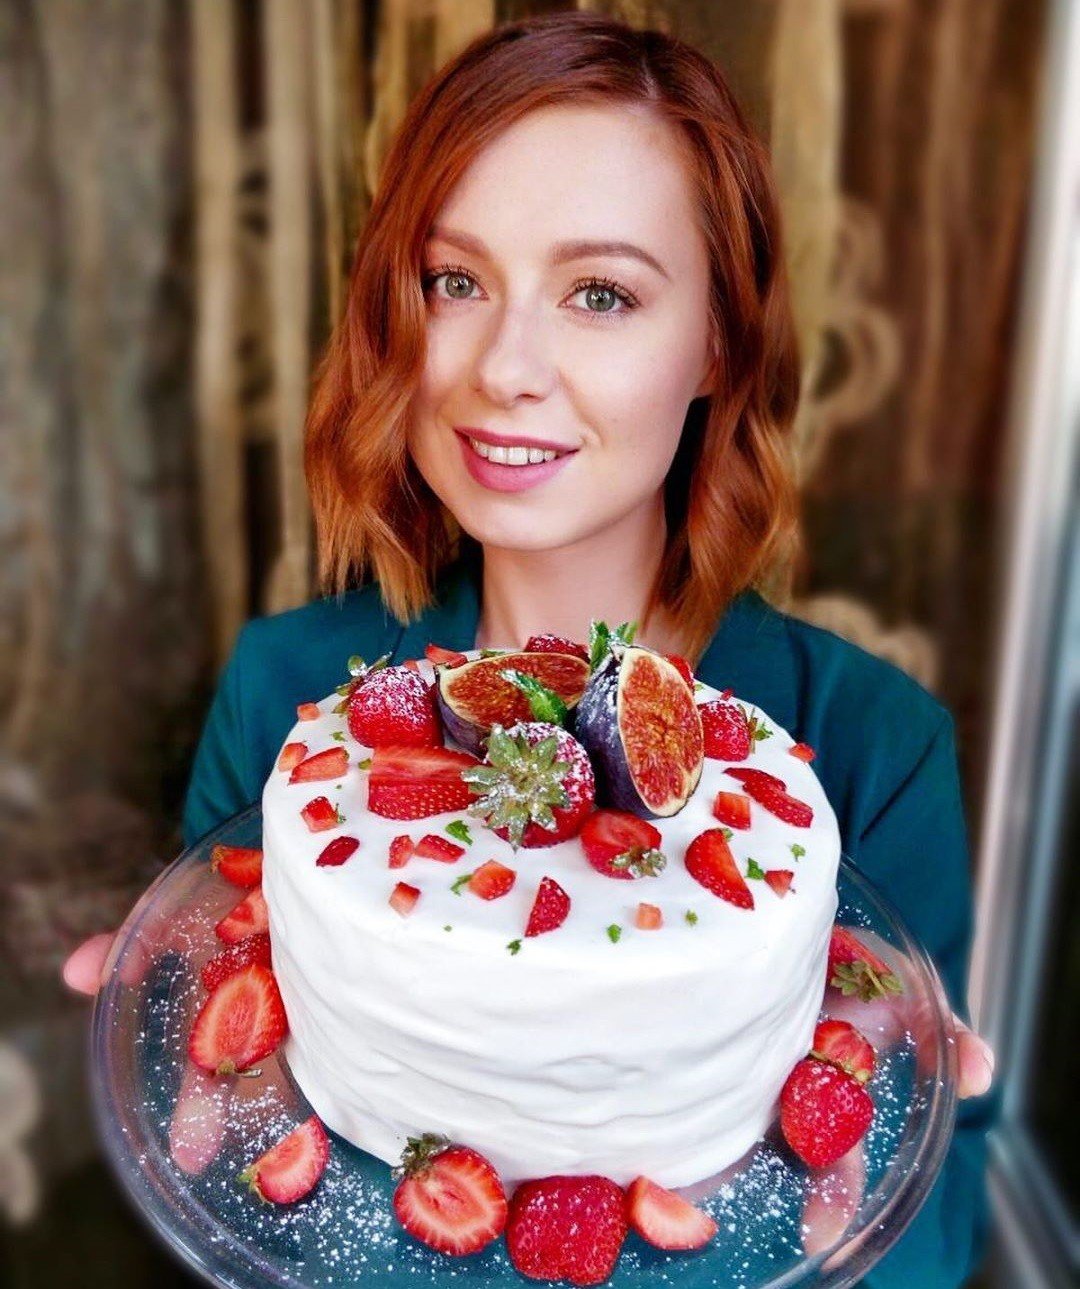 Вкус детства: невероятный бисквитный торт с клубникой от Юлии Савичевой